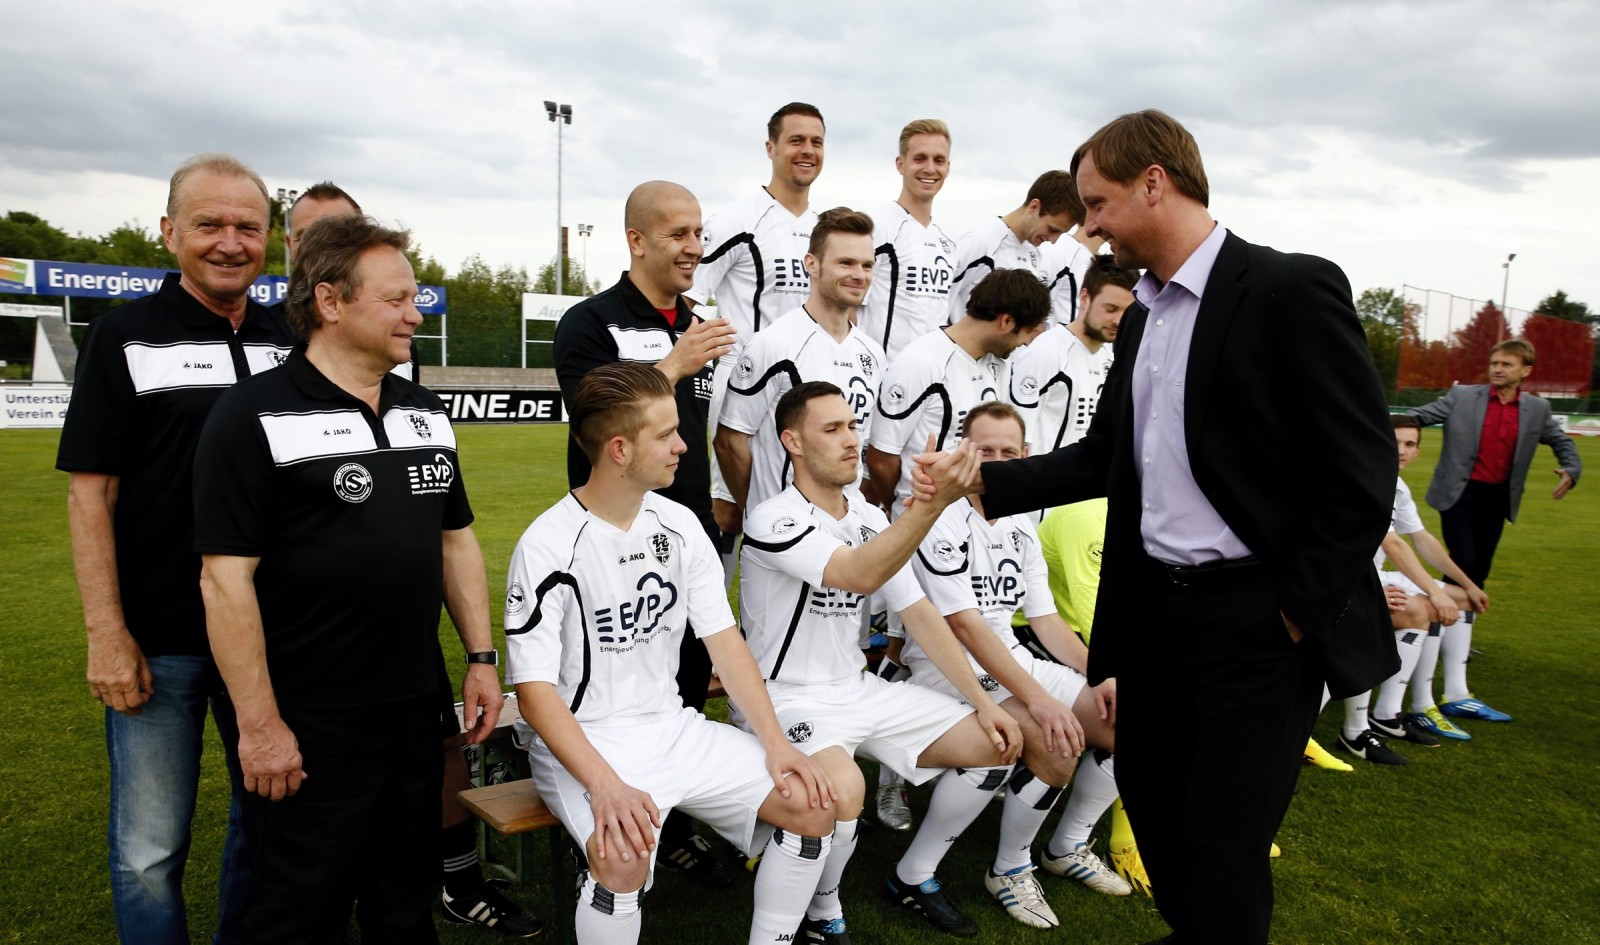 Teamfoto: Stefan Bohne, VfL-Vorsitzender, begrüßt die Mannschaft. Foto: Marko Förster